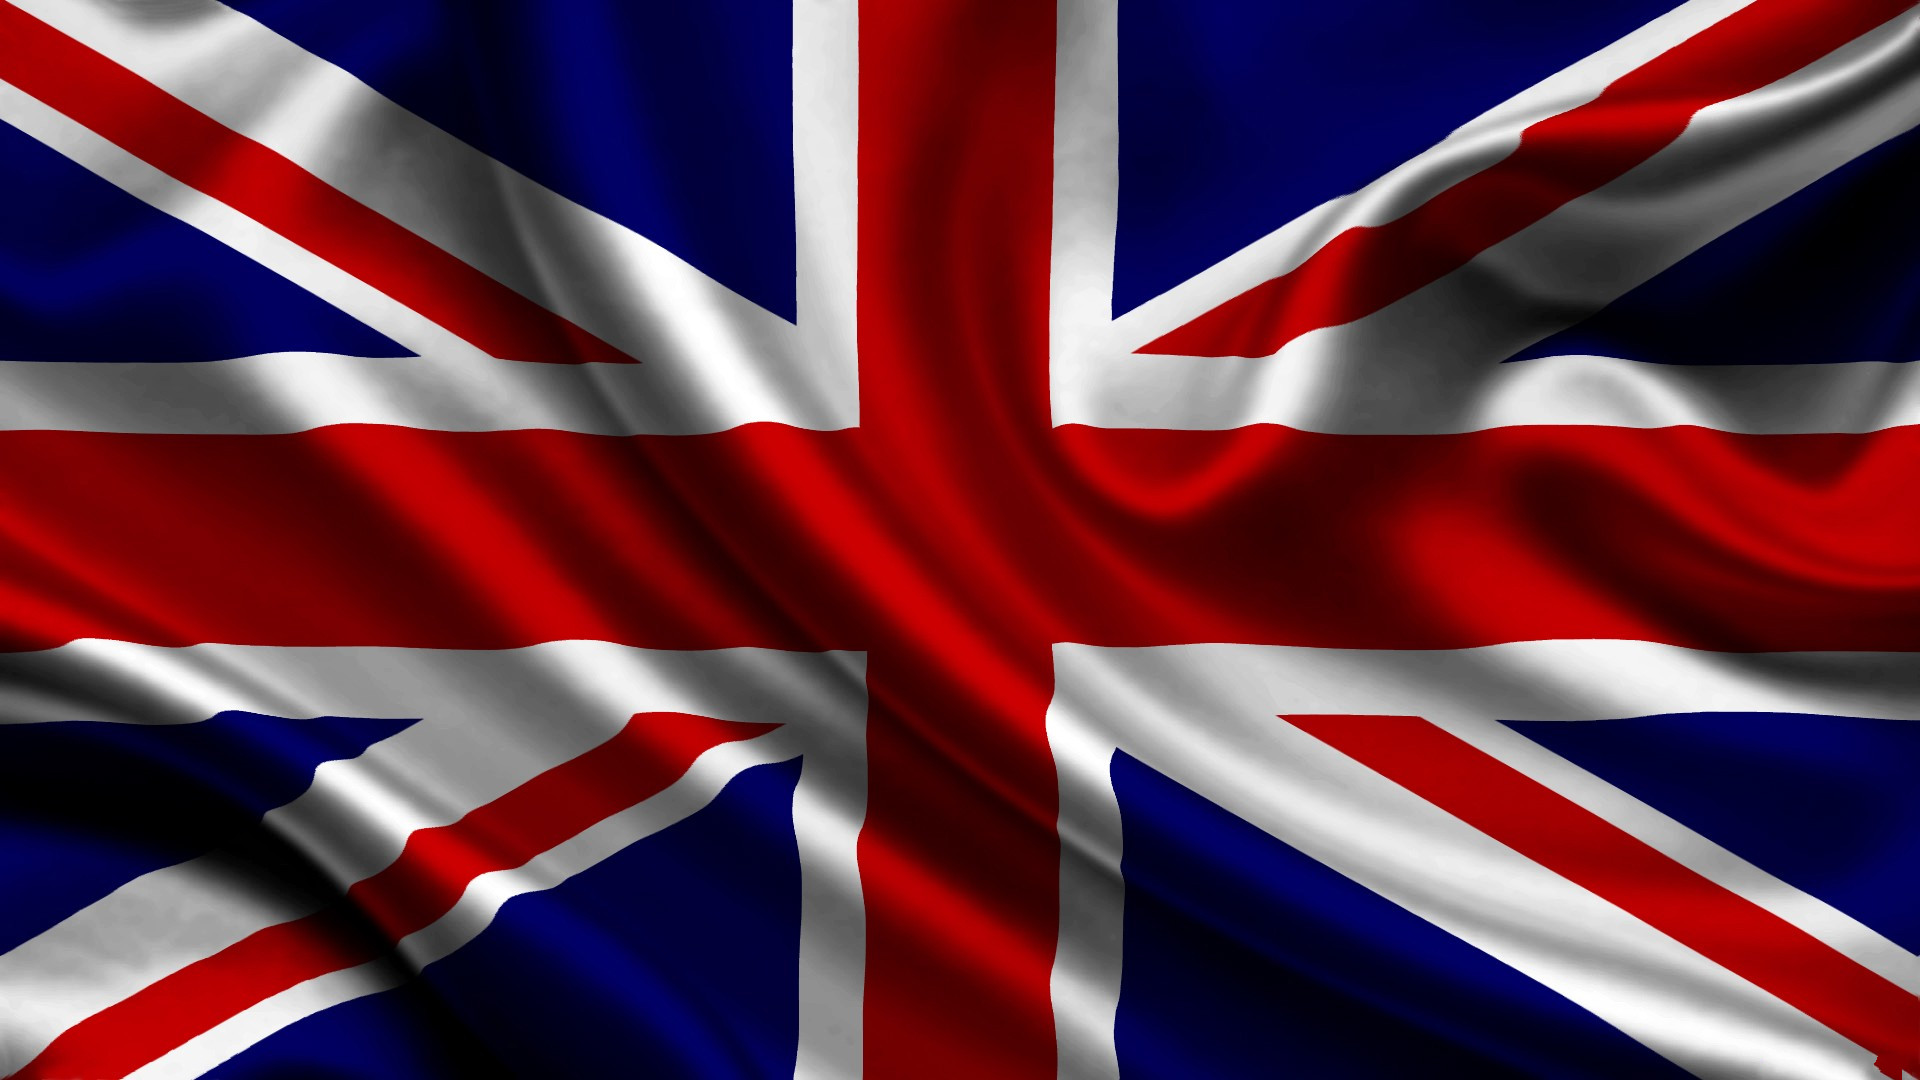 UK Flag Union Jack 1920x1080